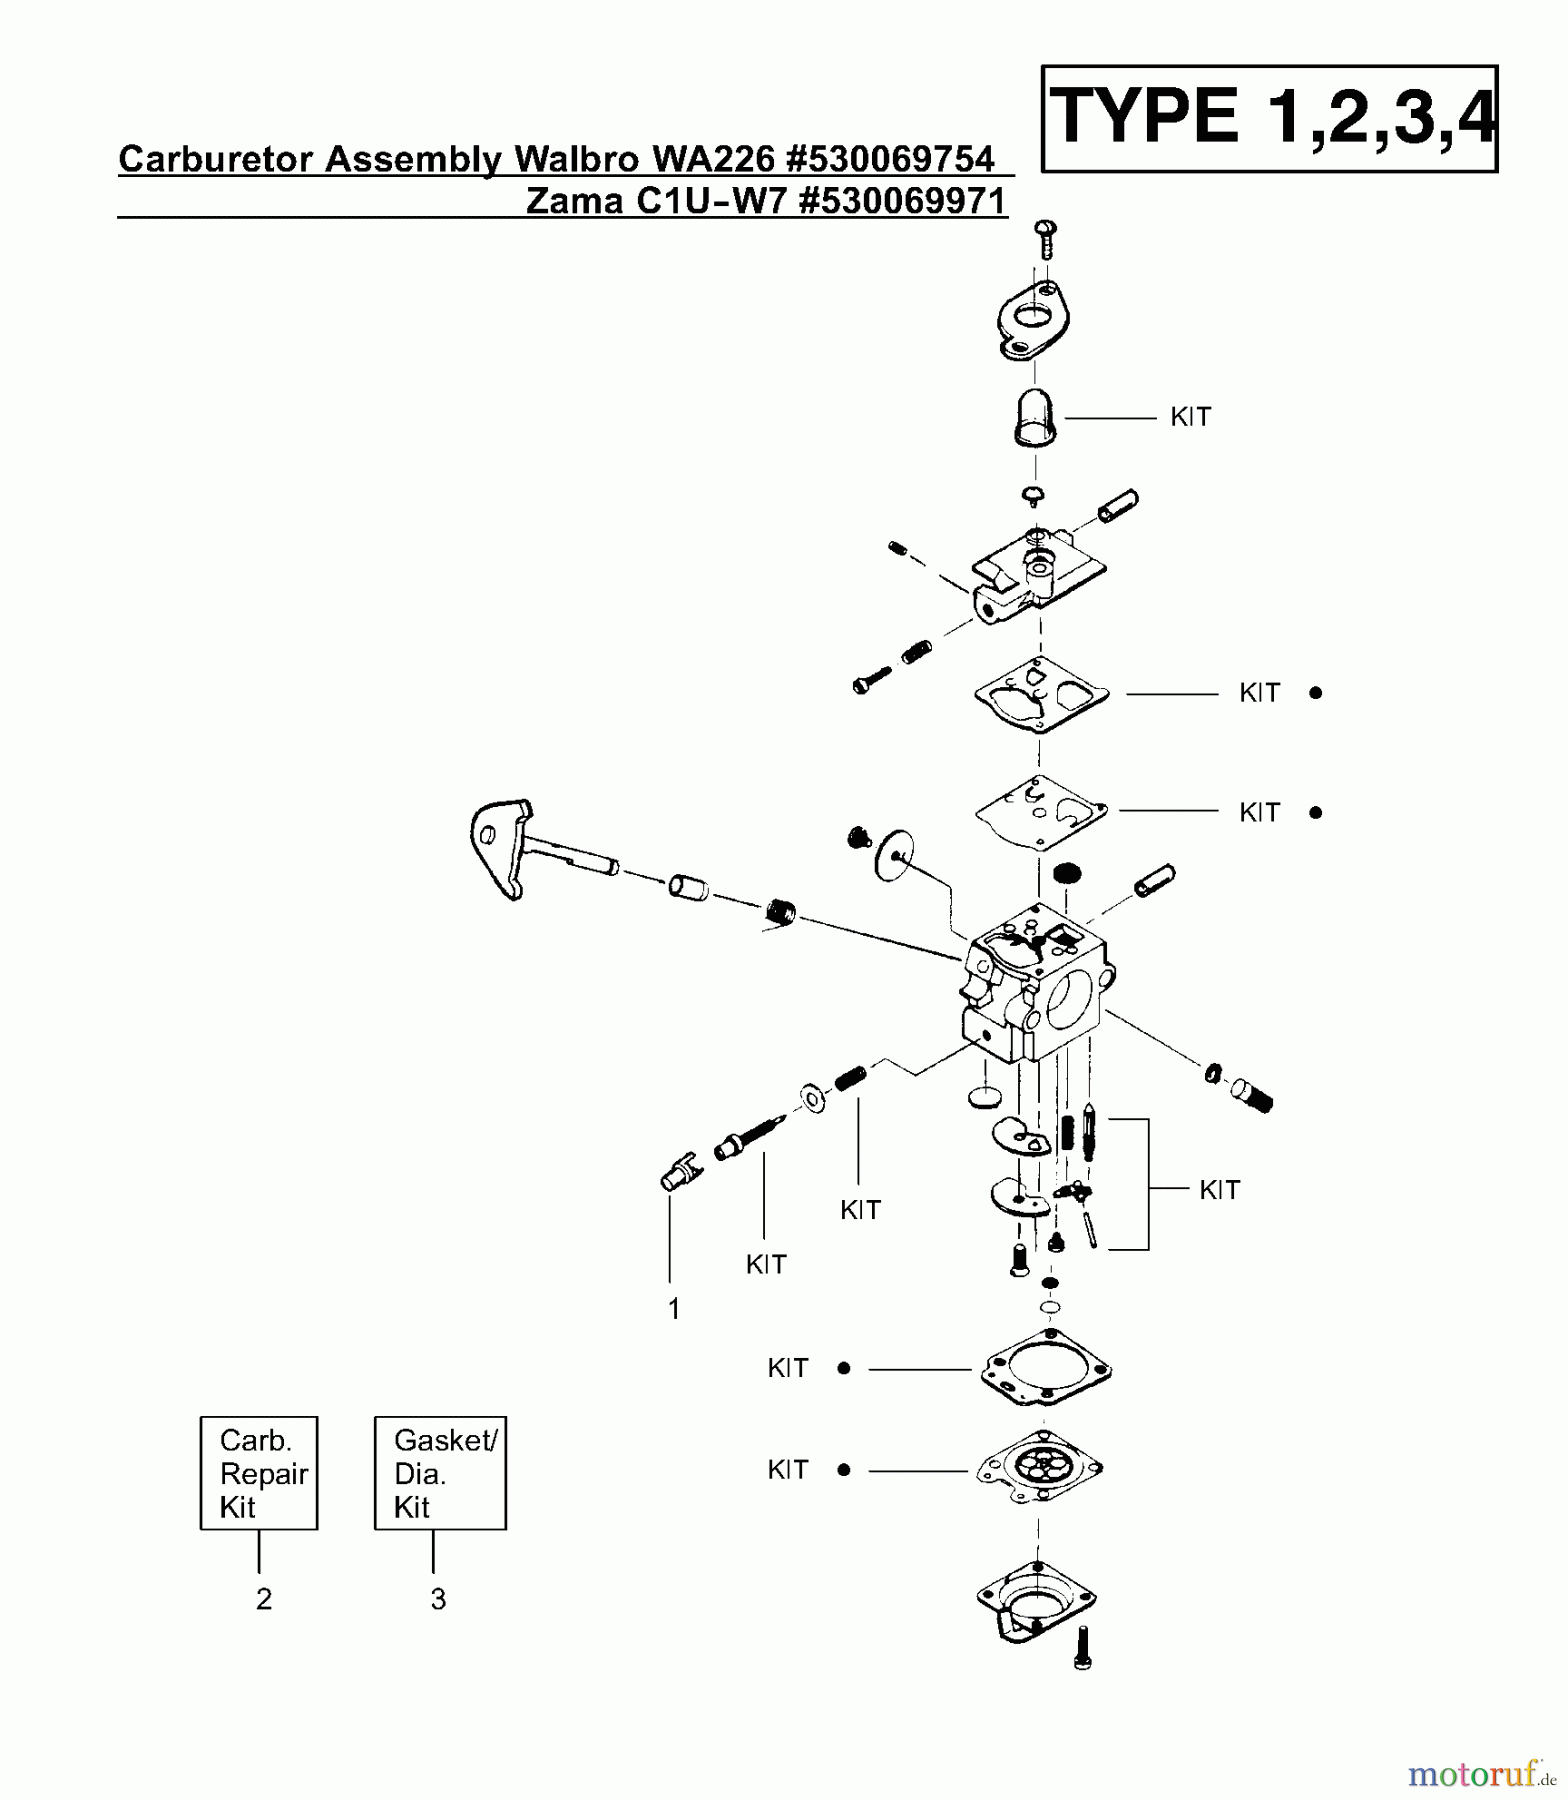  Poulan / Weed Eater Motorsensen, Trimmer XT400 (Type 2) - Weed Eater String Trimmer Carburetor Assembly (Walbro WA226) P/N 530069754, (Zama C1U-W7) P/N 530069971